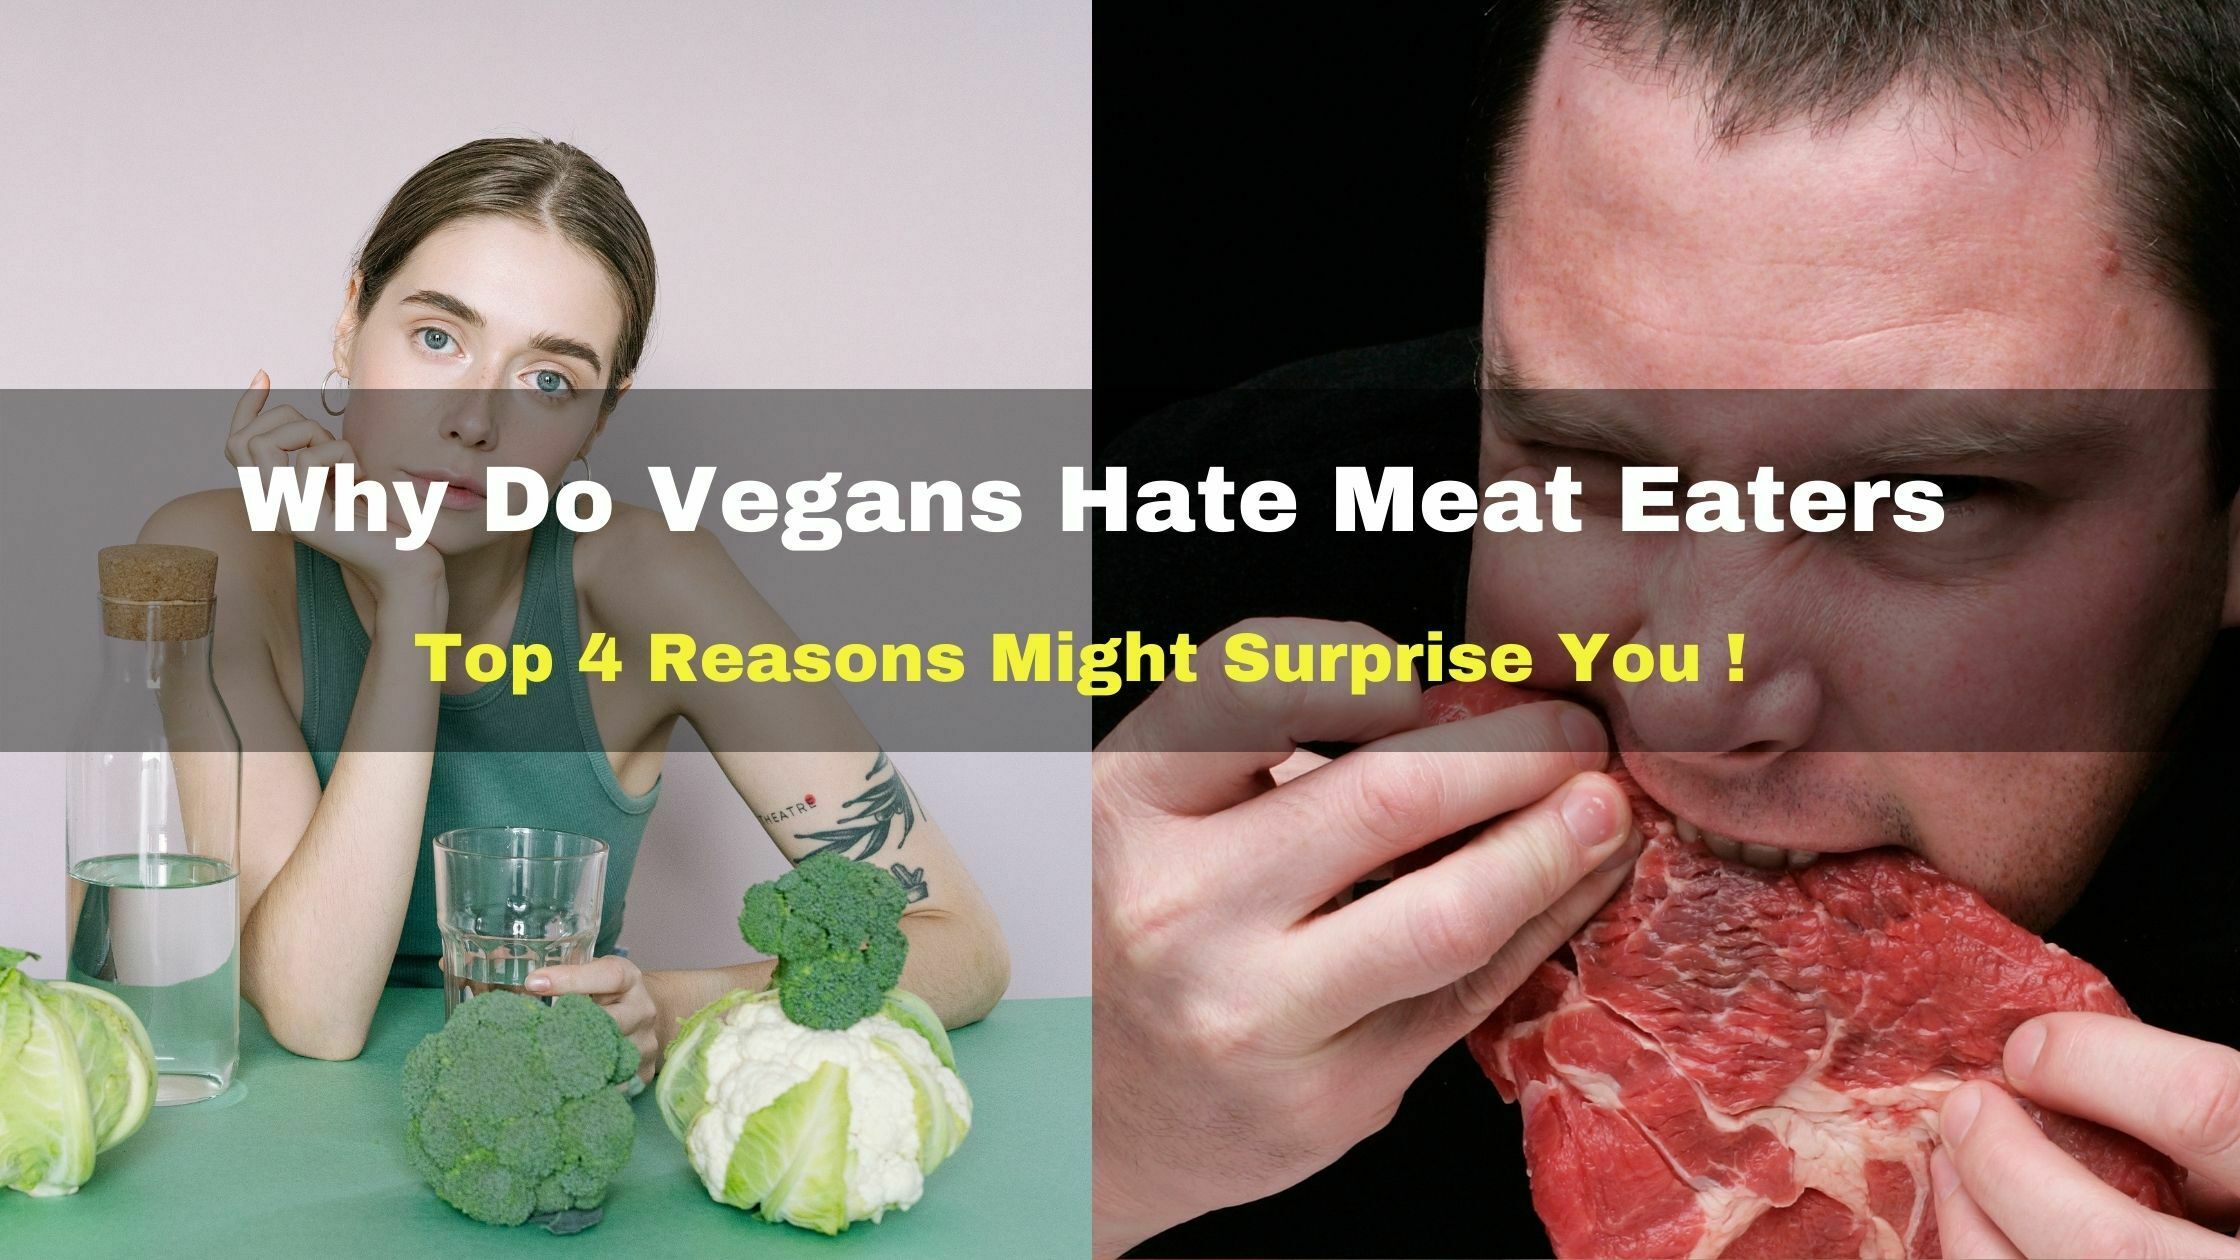 Vegans Hate Meat Eaters